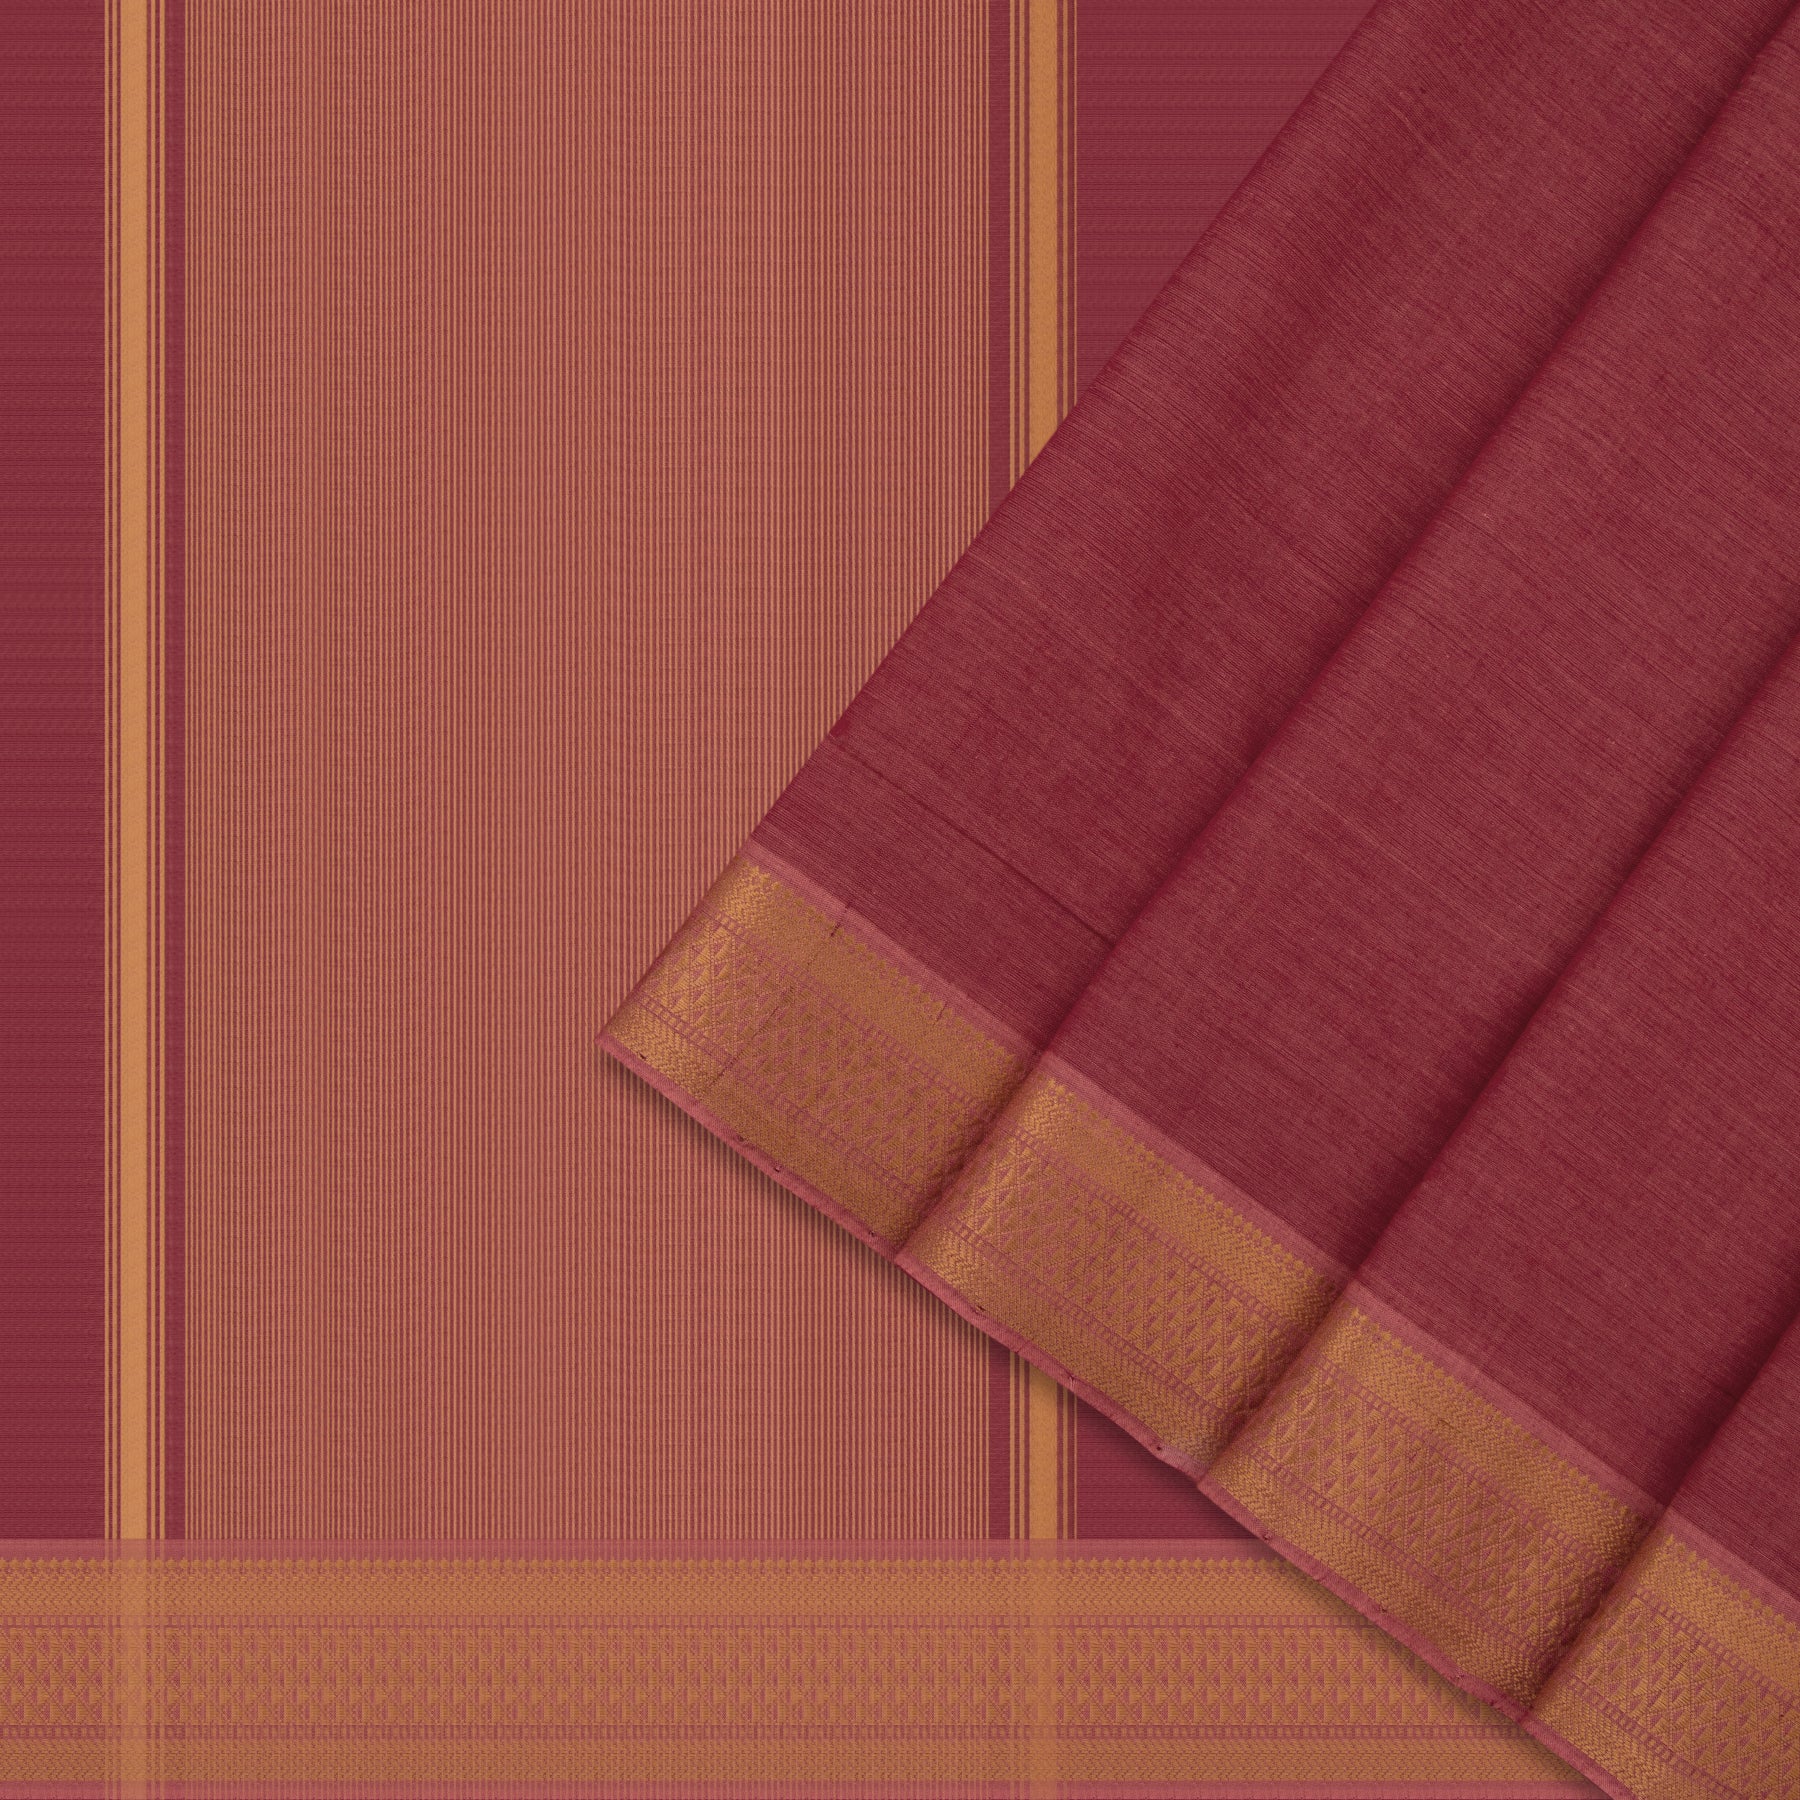 Kanakavalli Mangalgiri Cotton Sari 22-261-HS003-01158 - Cover View